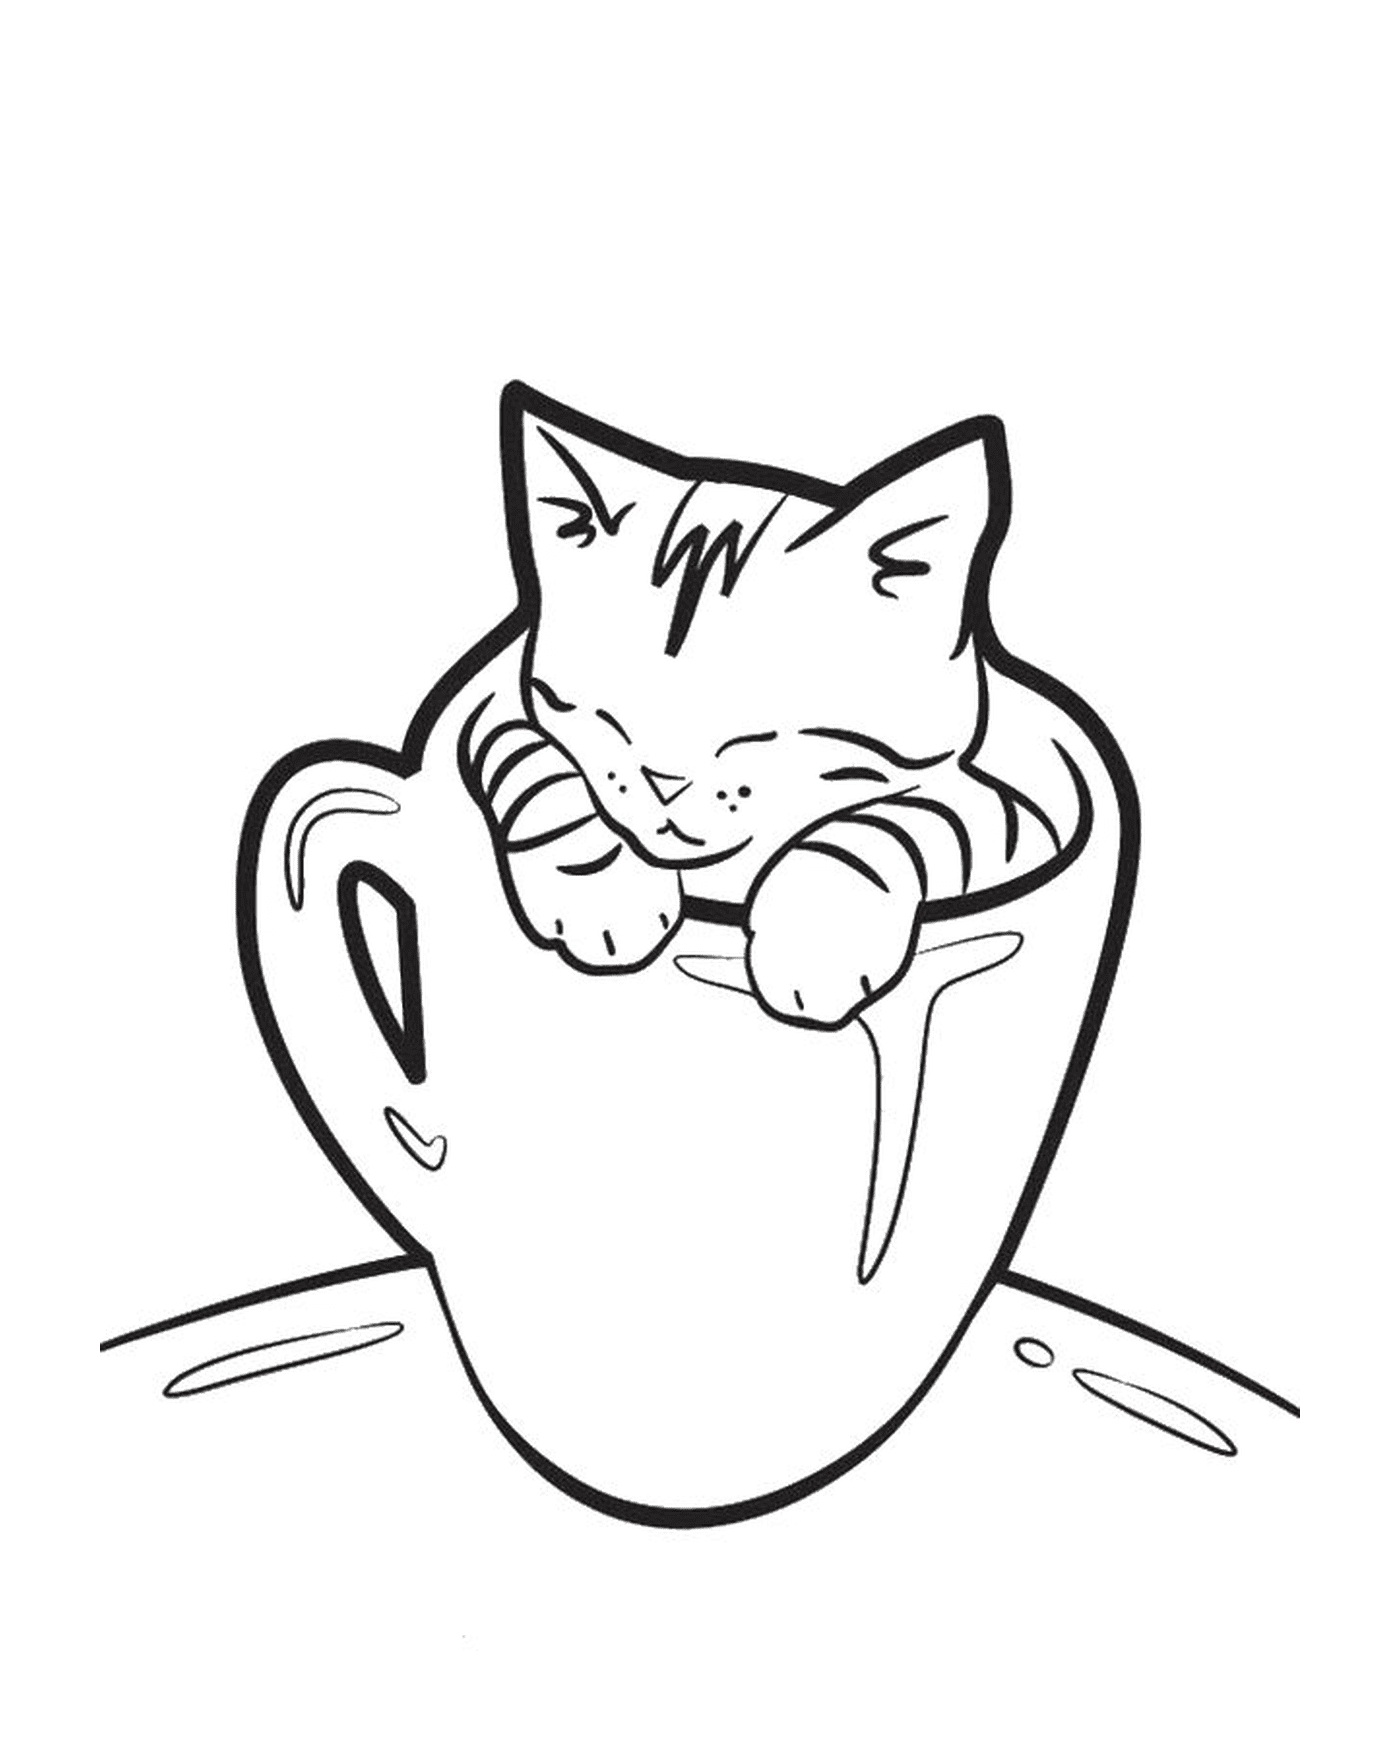  एक अजीब बिल्ली के साथ कॉफी का कप 